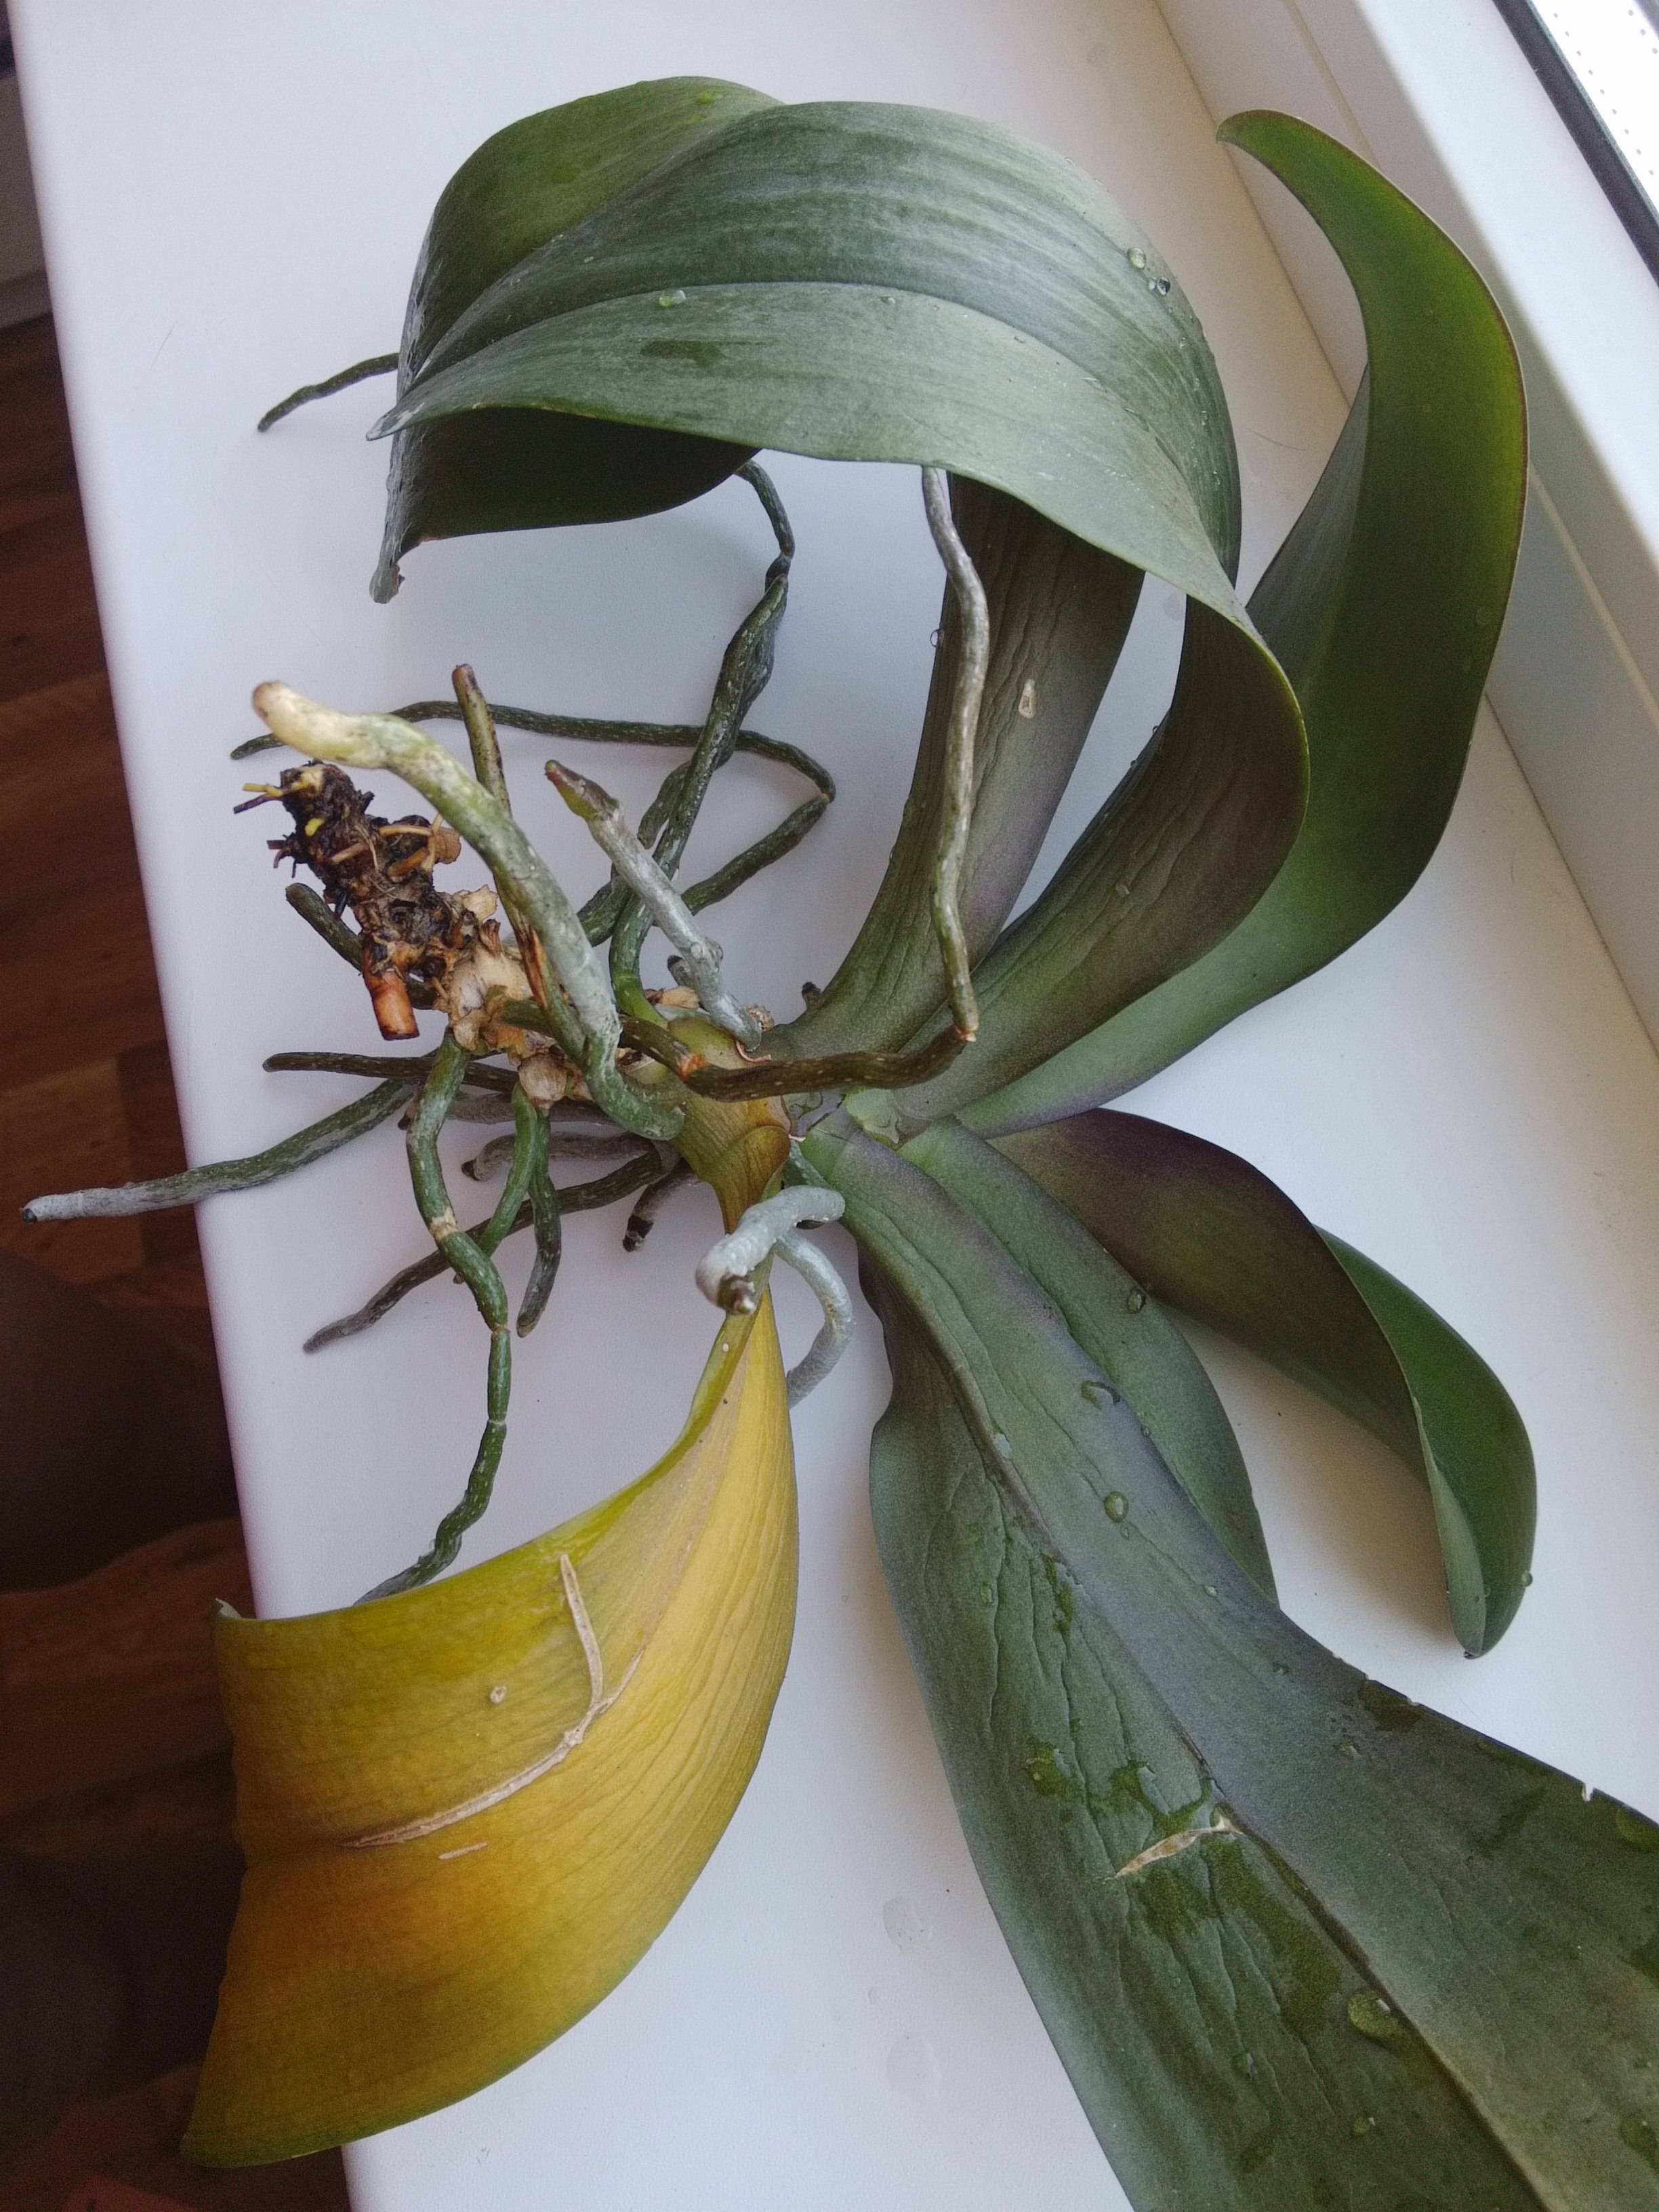 Фаленопсис отцветает, что делать дальше со стрелкой орхидеи, когда обрезать, как обеспечить правильный уход за растением в домашних условиях после распускания? selo.guru — интернет портал о сельском хозяйстве